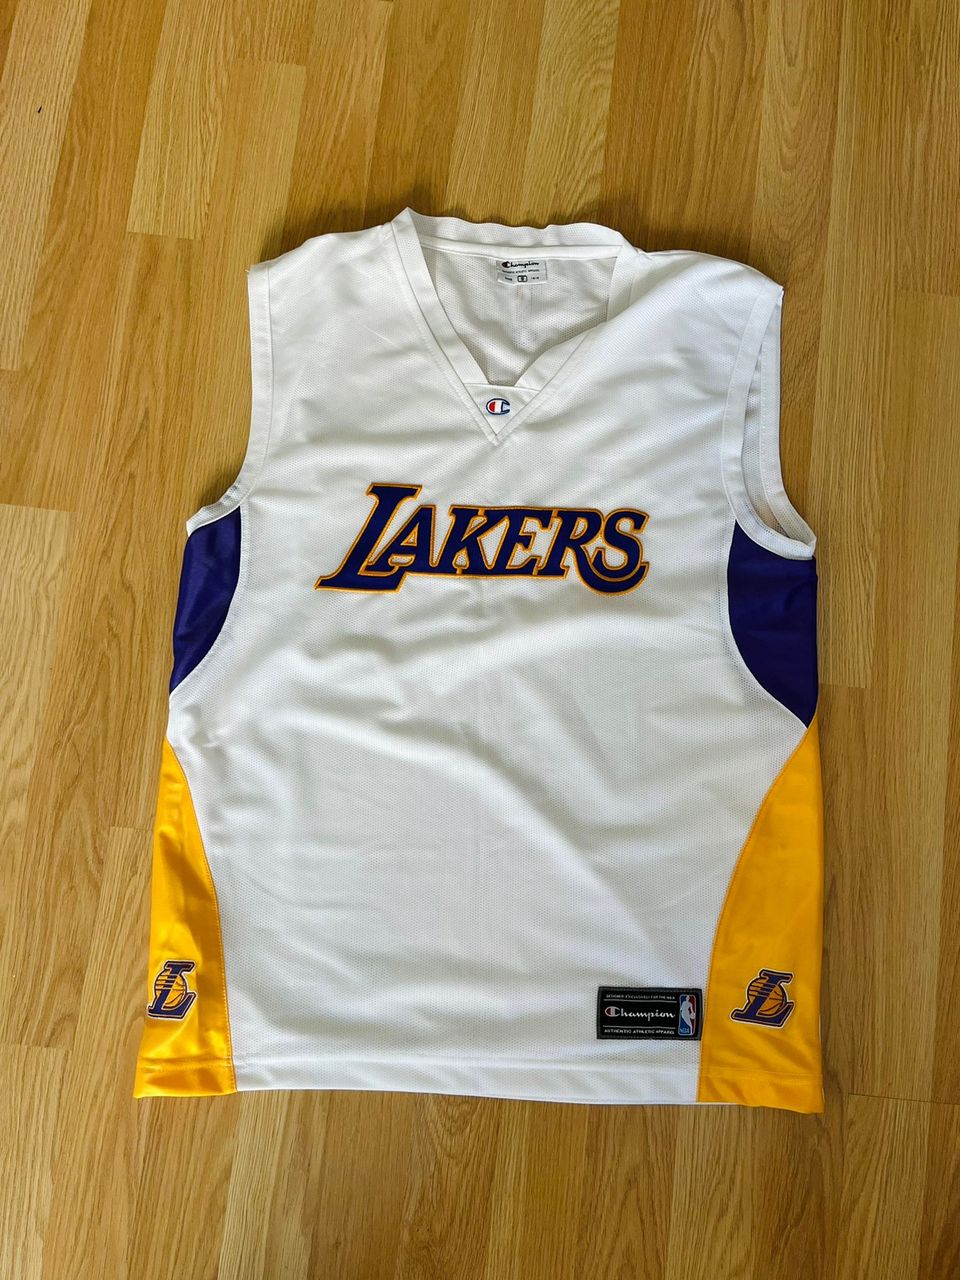 Lakers NBA jersey